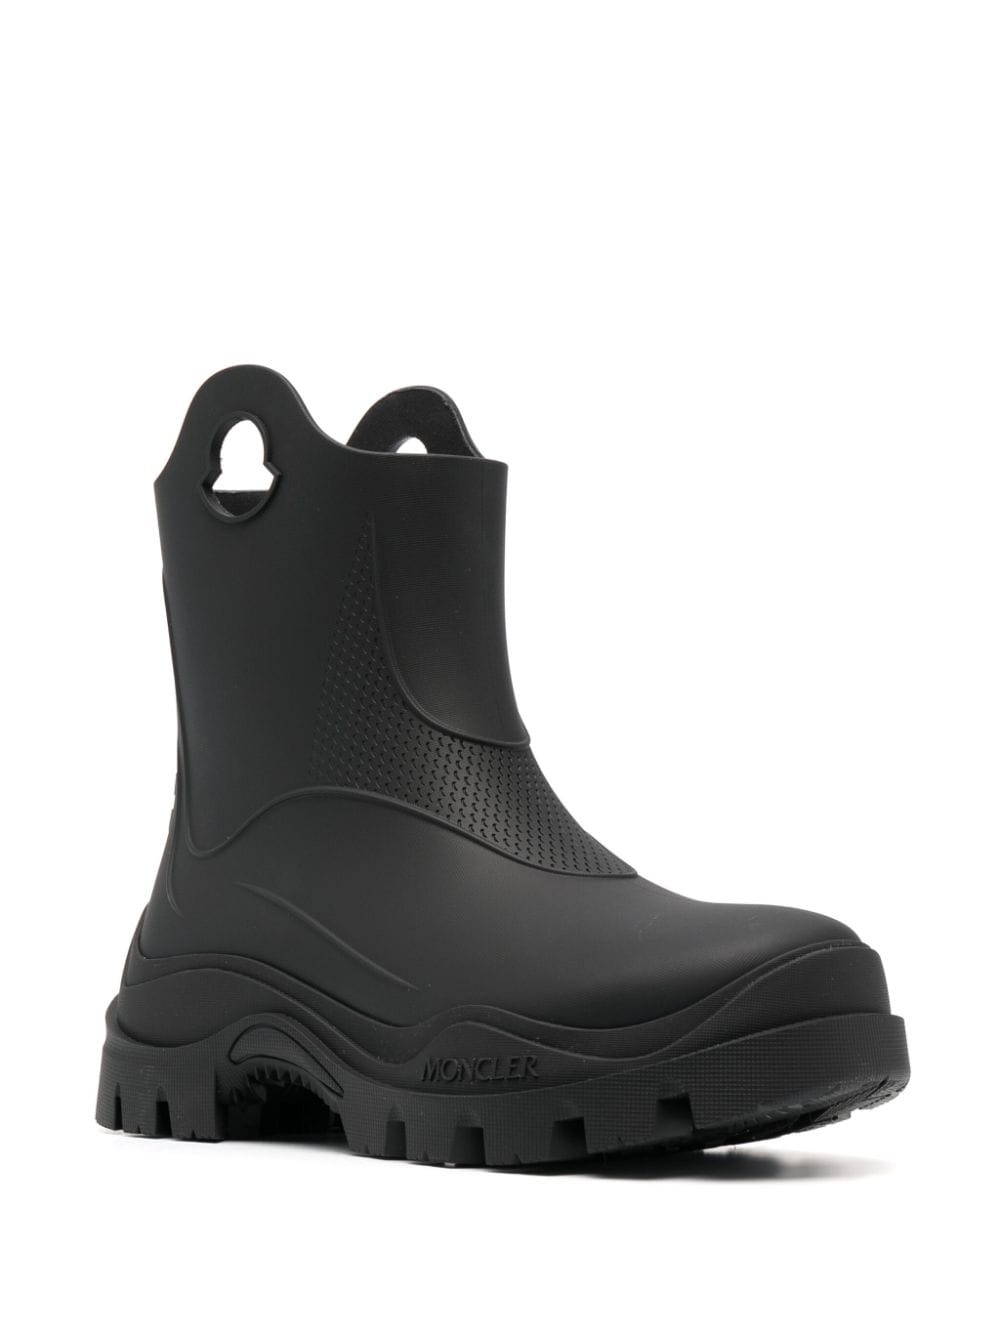 Misty rain boots - 3